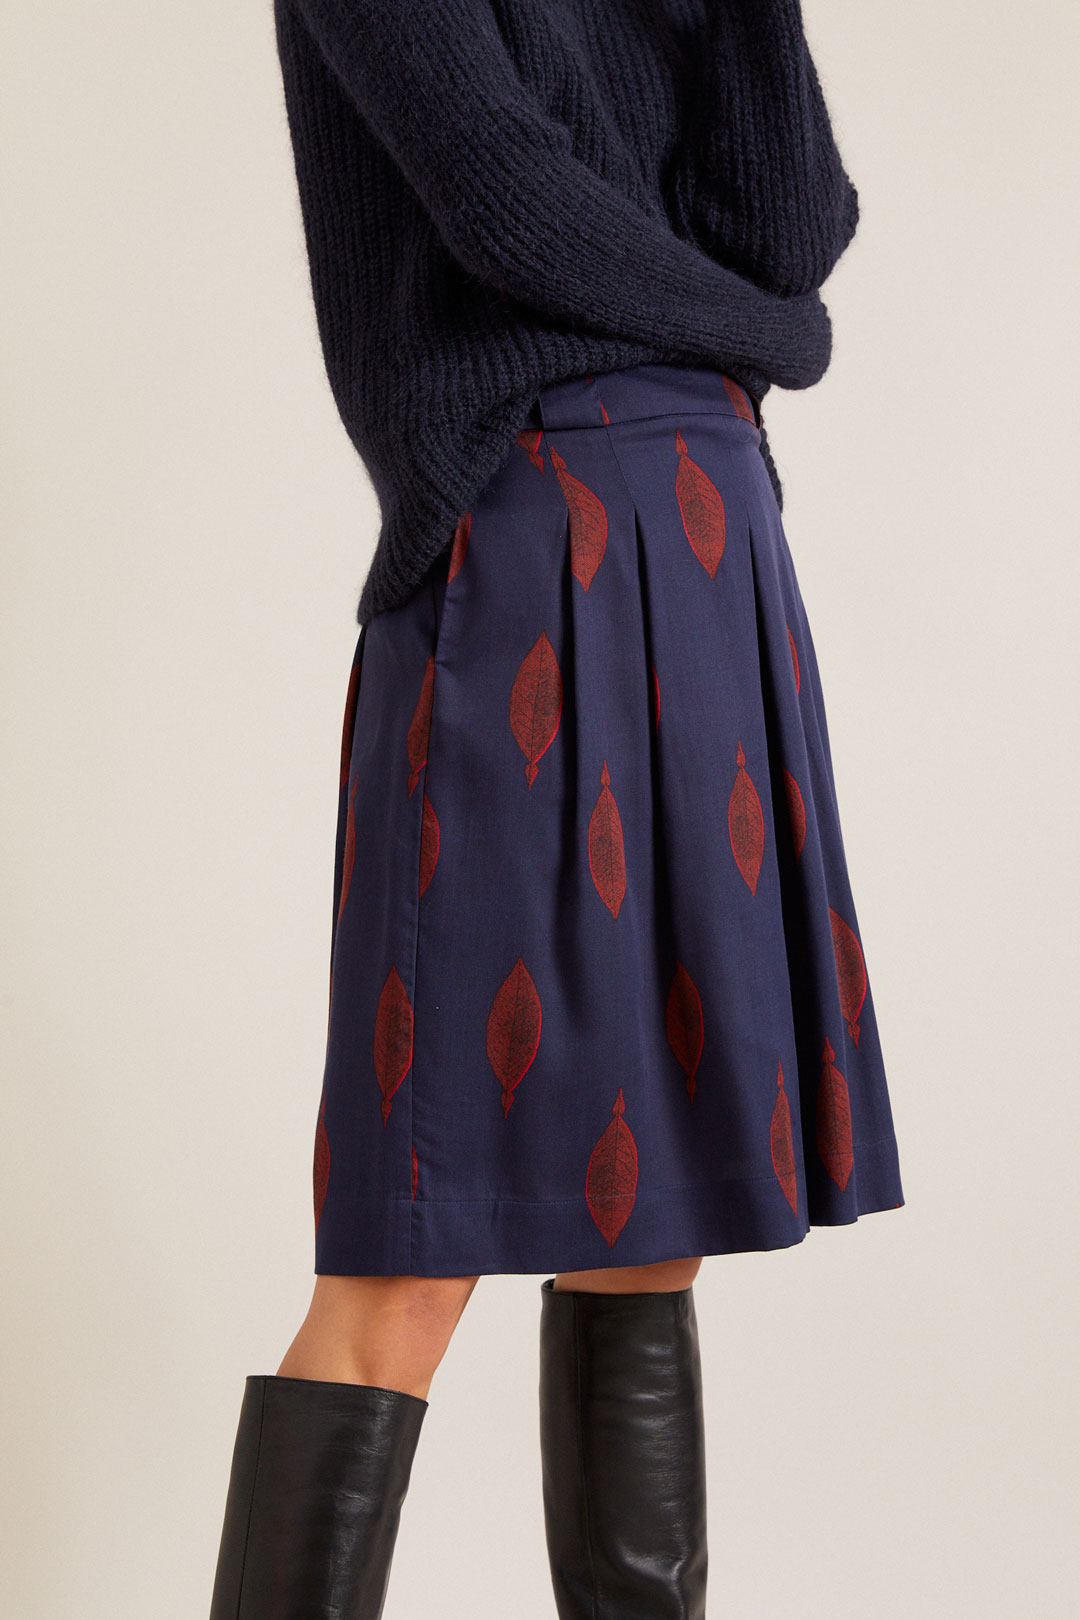 Fair Fashion Faltenrock mit Print für ein elegantes Herbst Outfit